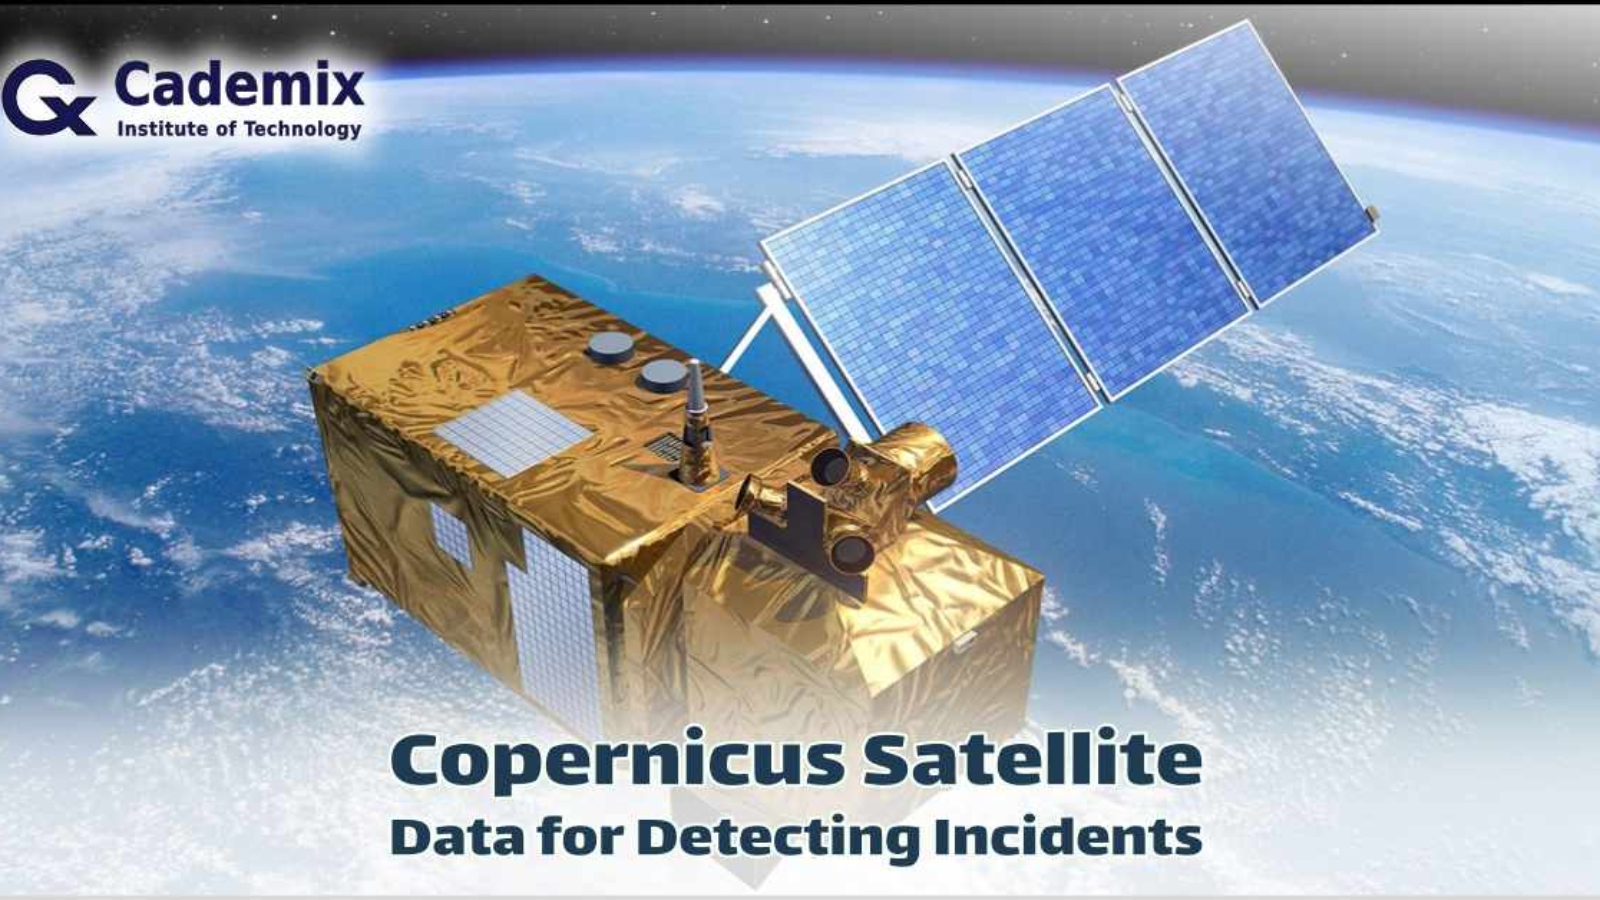 Copernicus Satellite Data for Detecting Incidents Tutorial